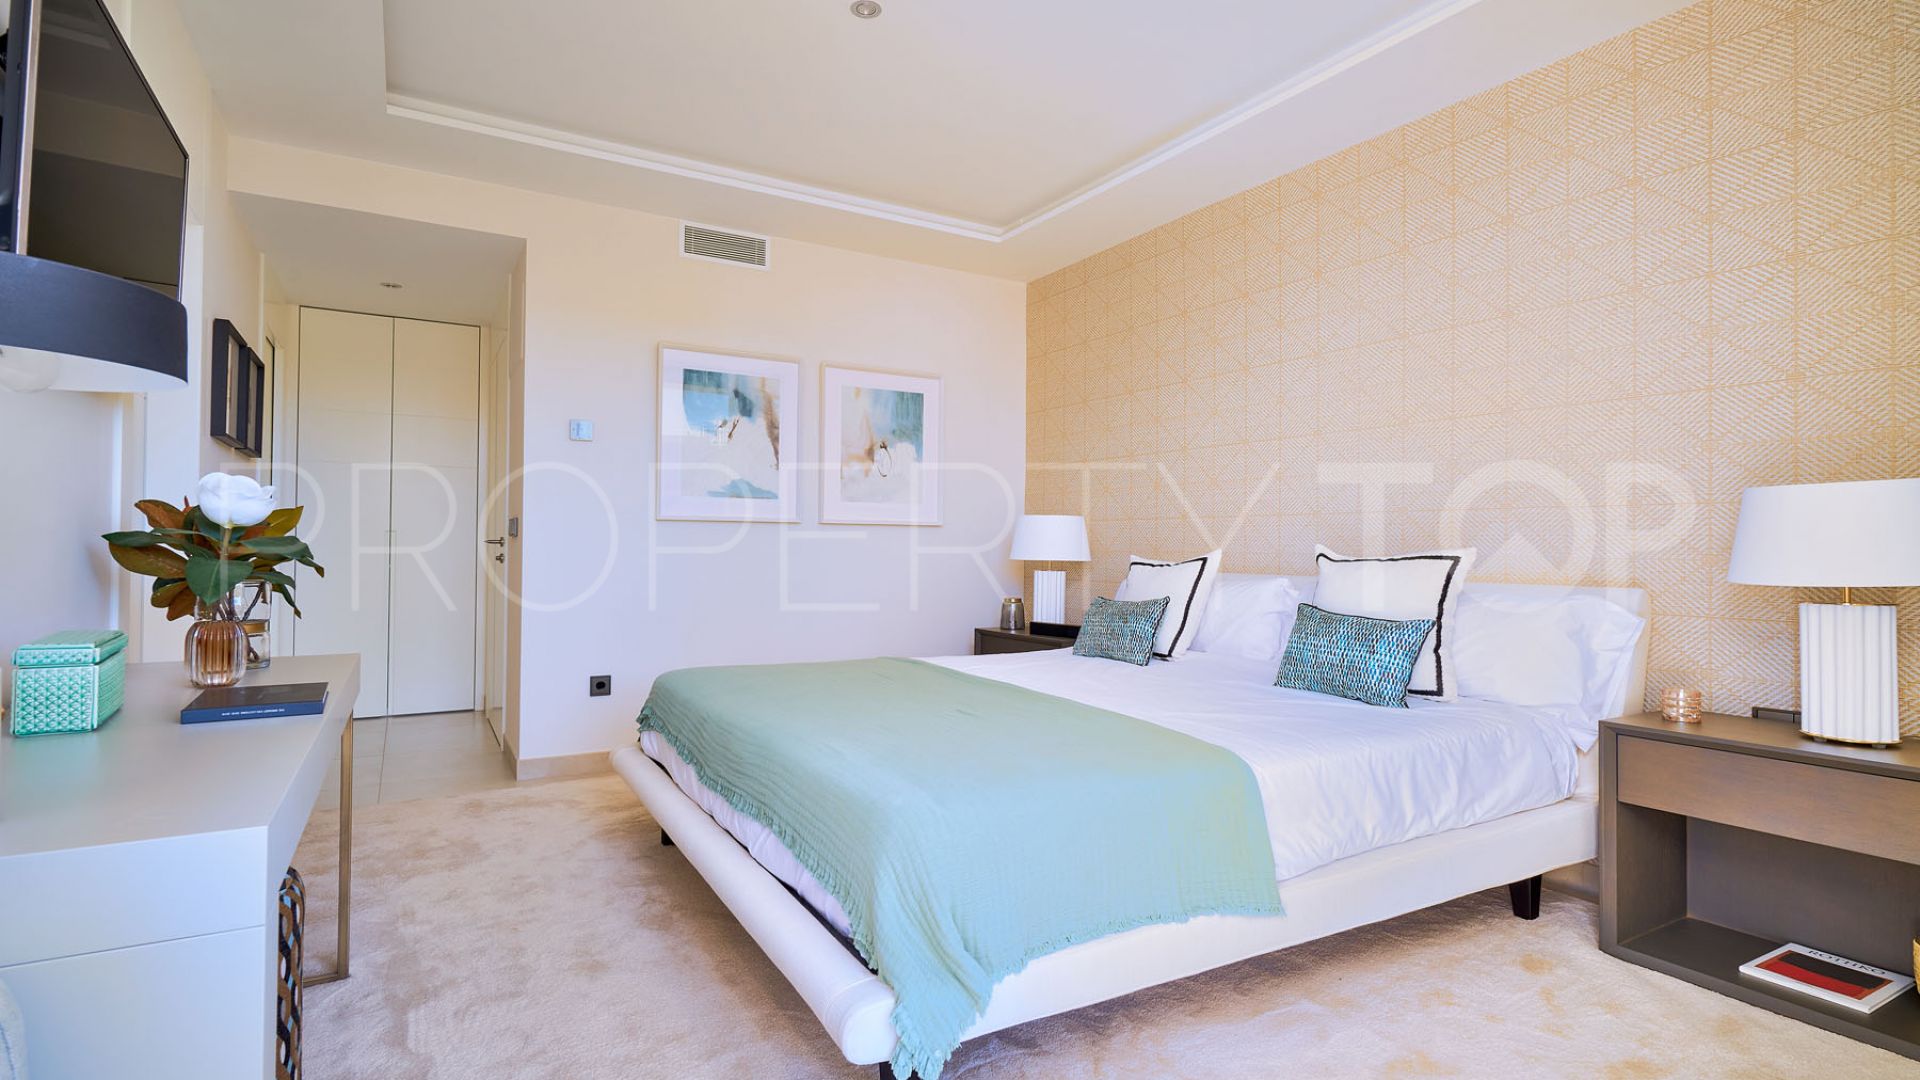 Marbella - Puerto Banus, pareado de 3 dormitorios en venta